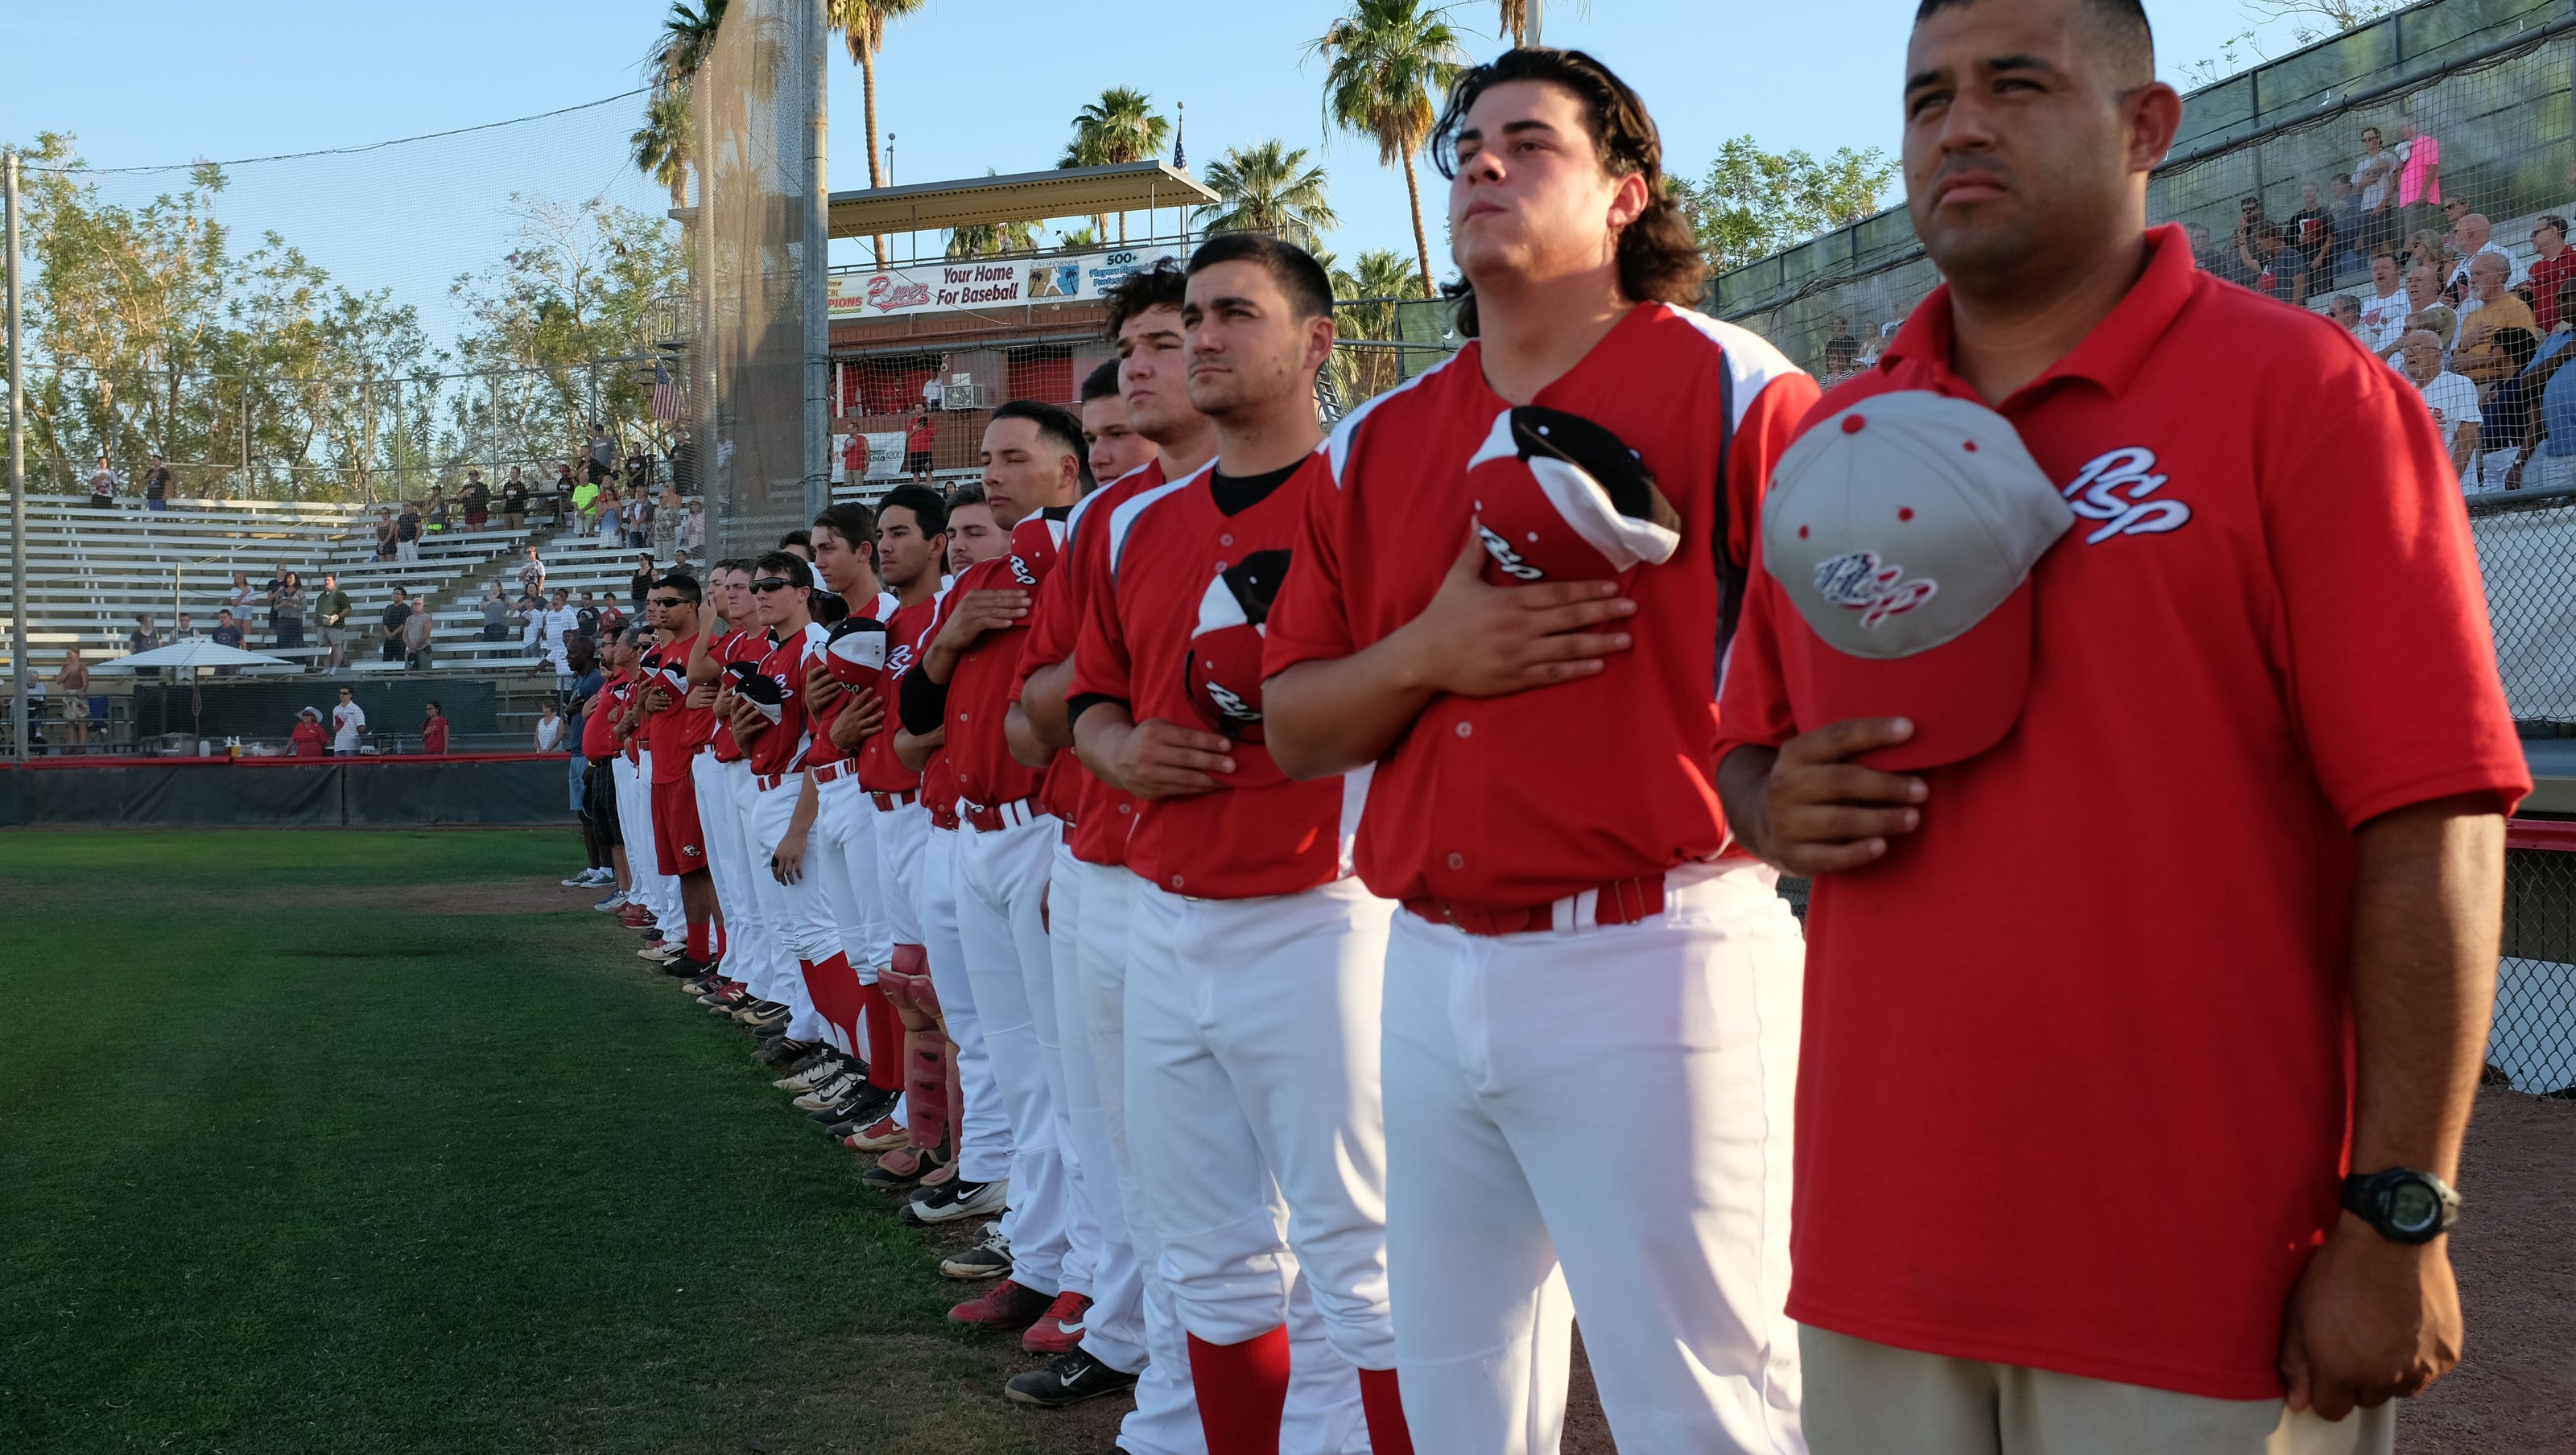 Ready for summer baseball? The Palm Springs Power returns for 2019